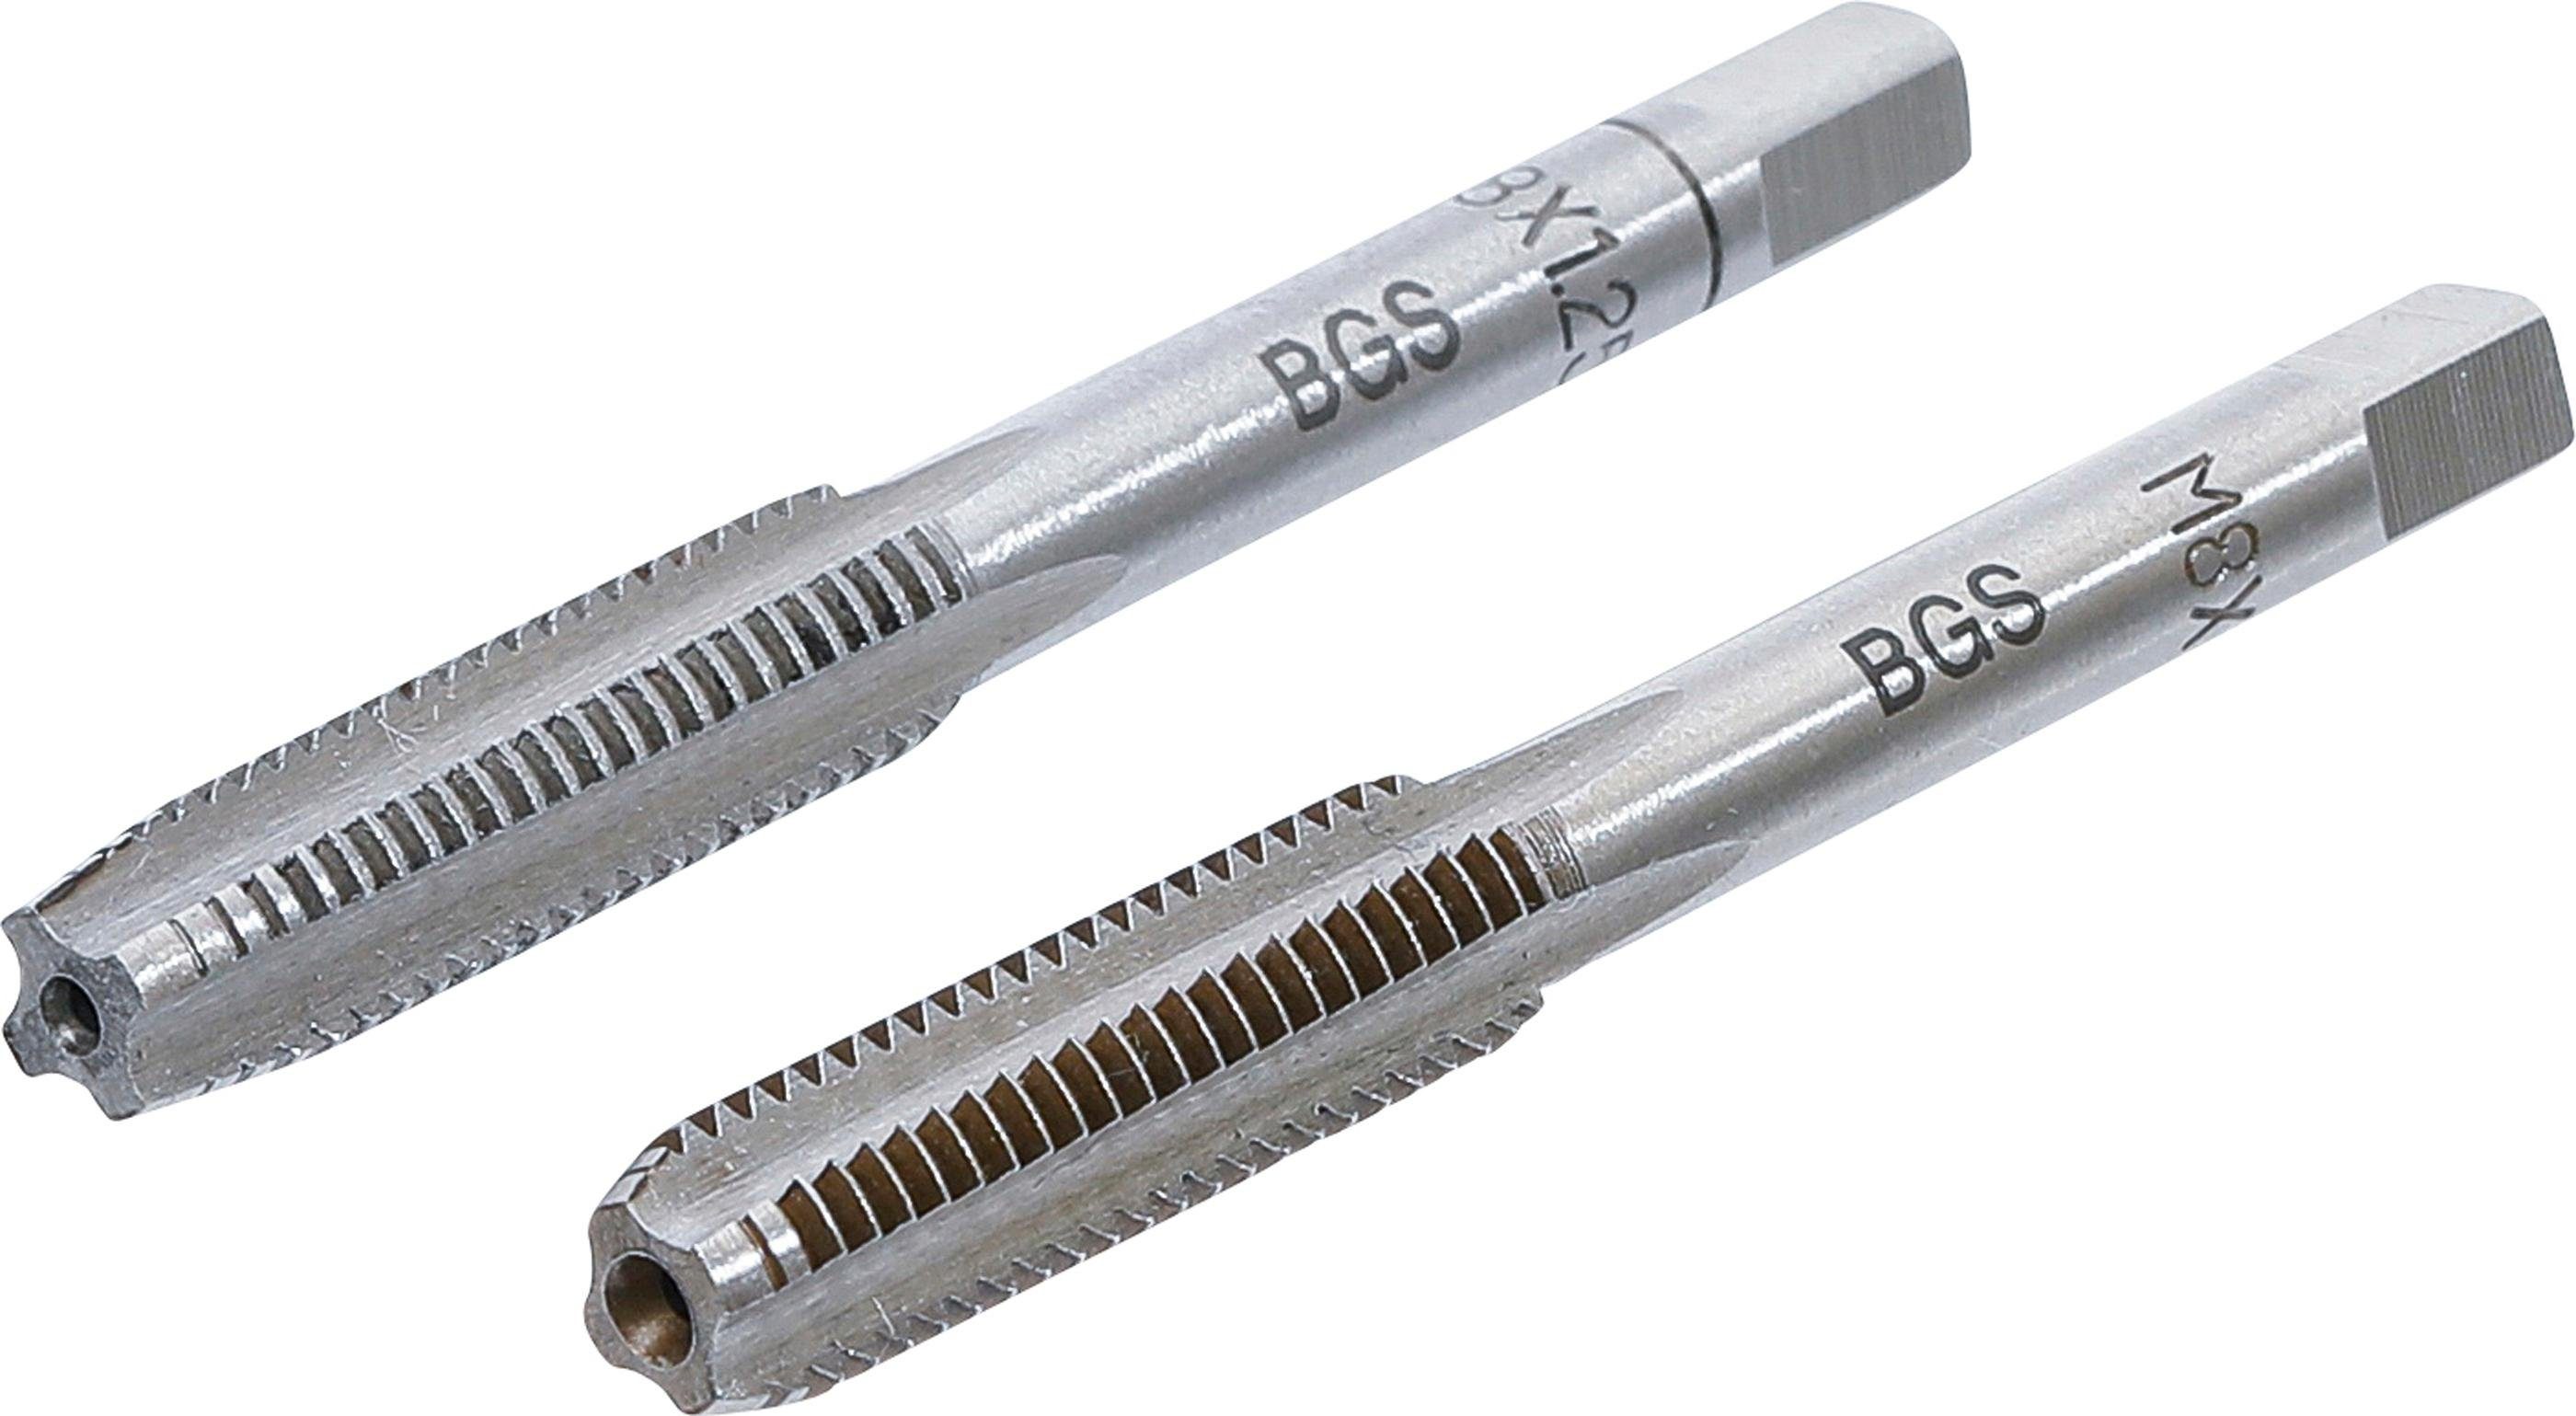 BGS technic Gewindebohrer Gewindebohrer, Vor- und Fertigschneider, M8 x 1,25 mm, 2-tlg.